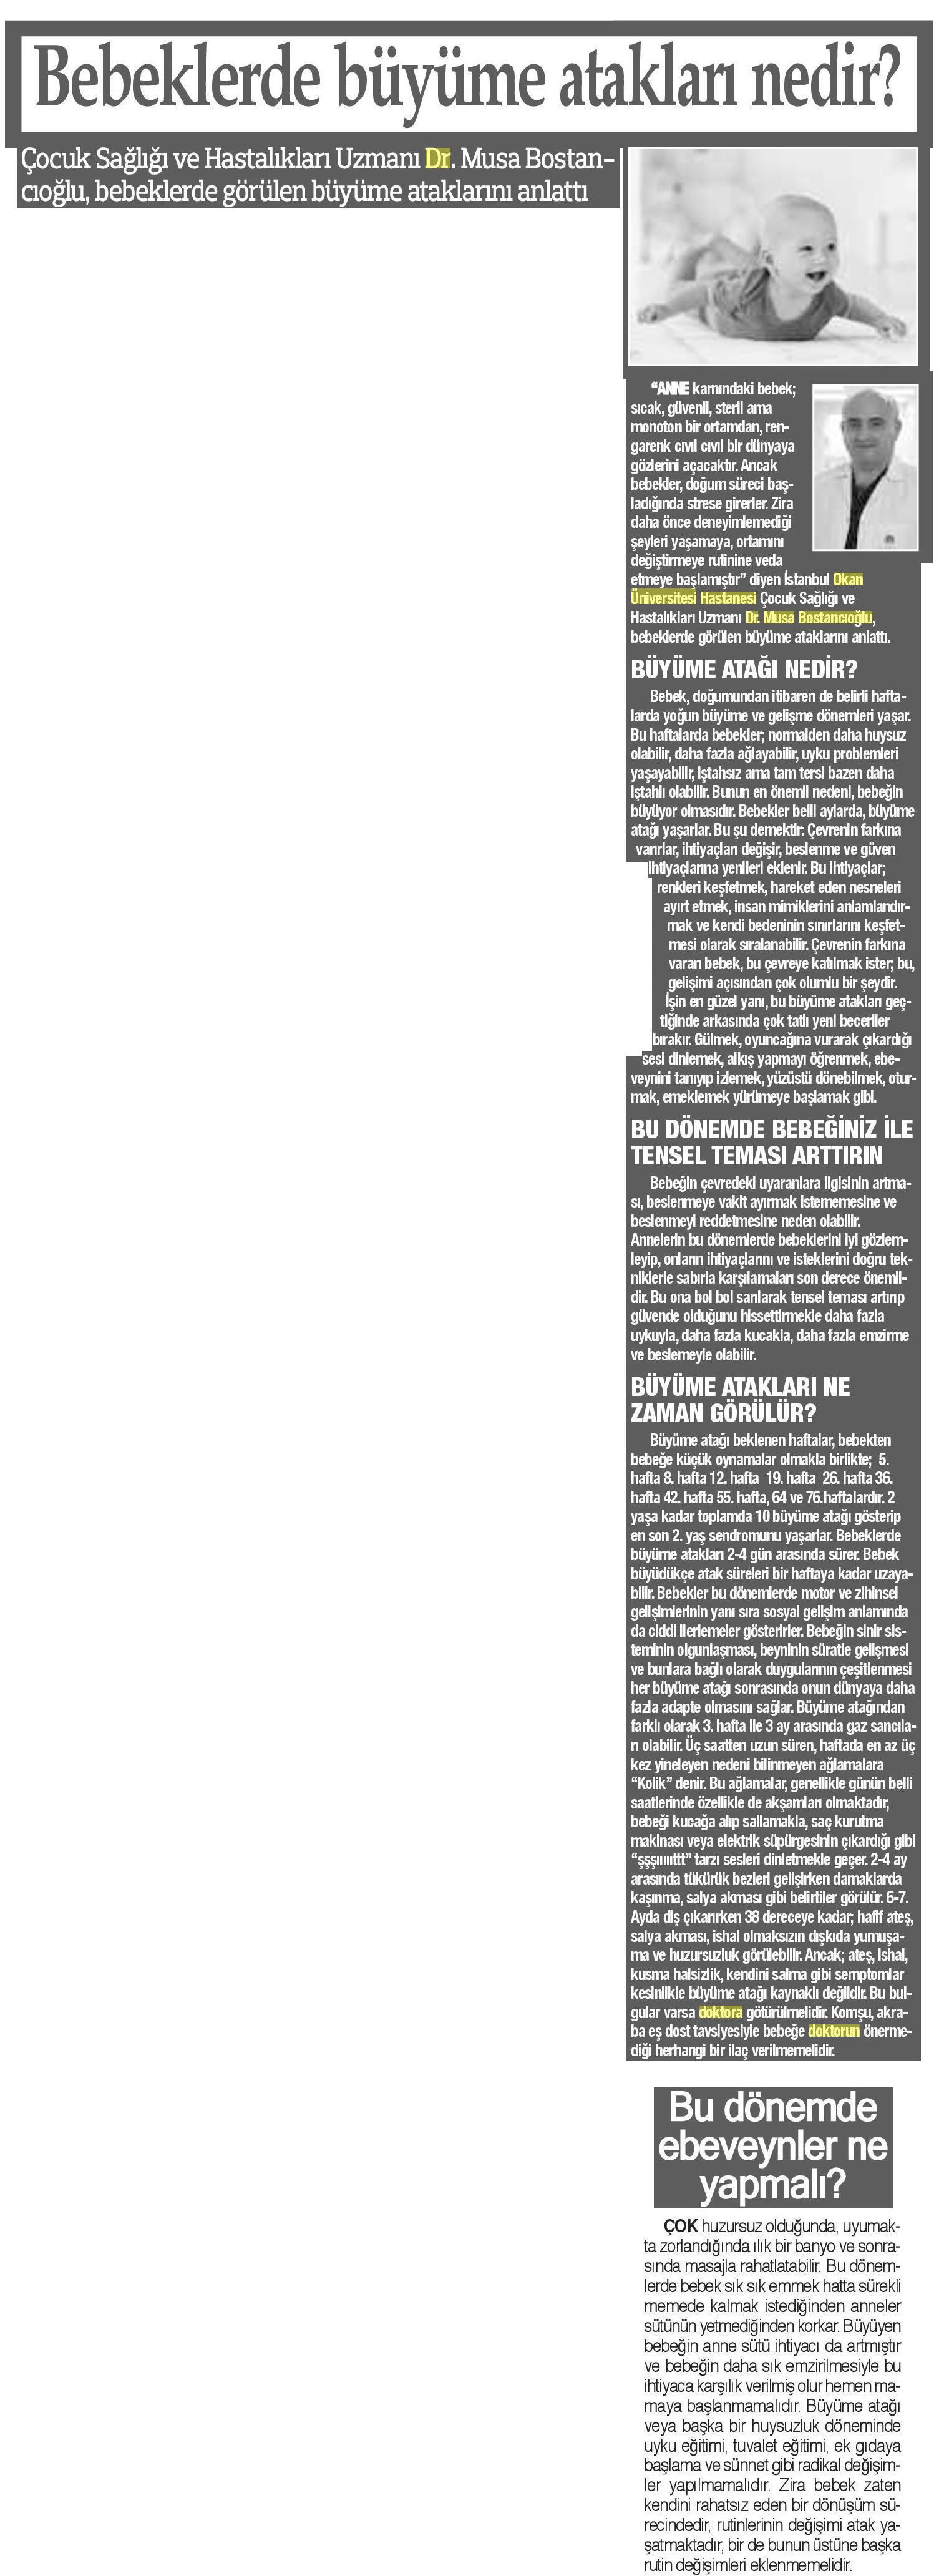 28.04.2019 Bizim Anadolu Gazetesi BEBEKLERDE BÜYÜME ATAKLARI NEDİR?